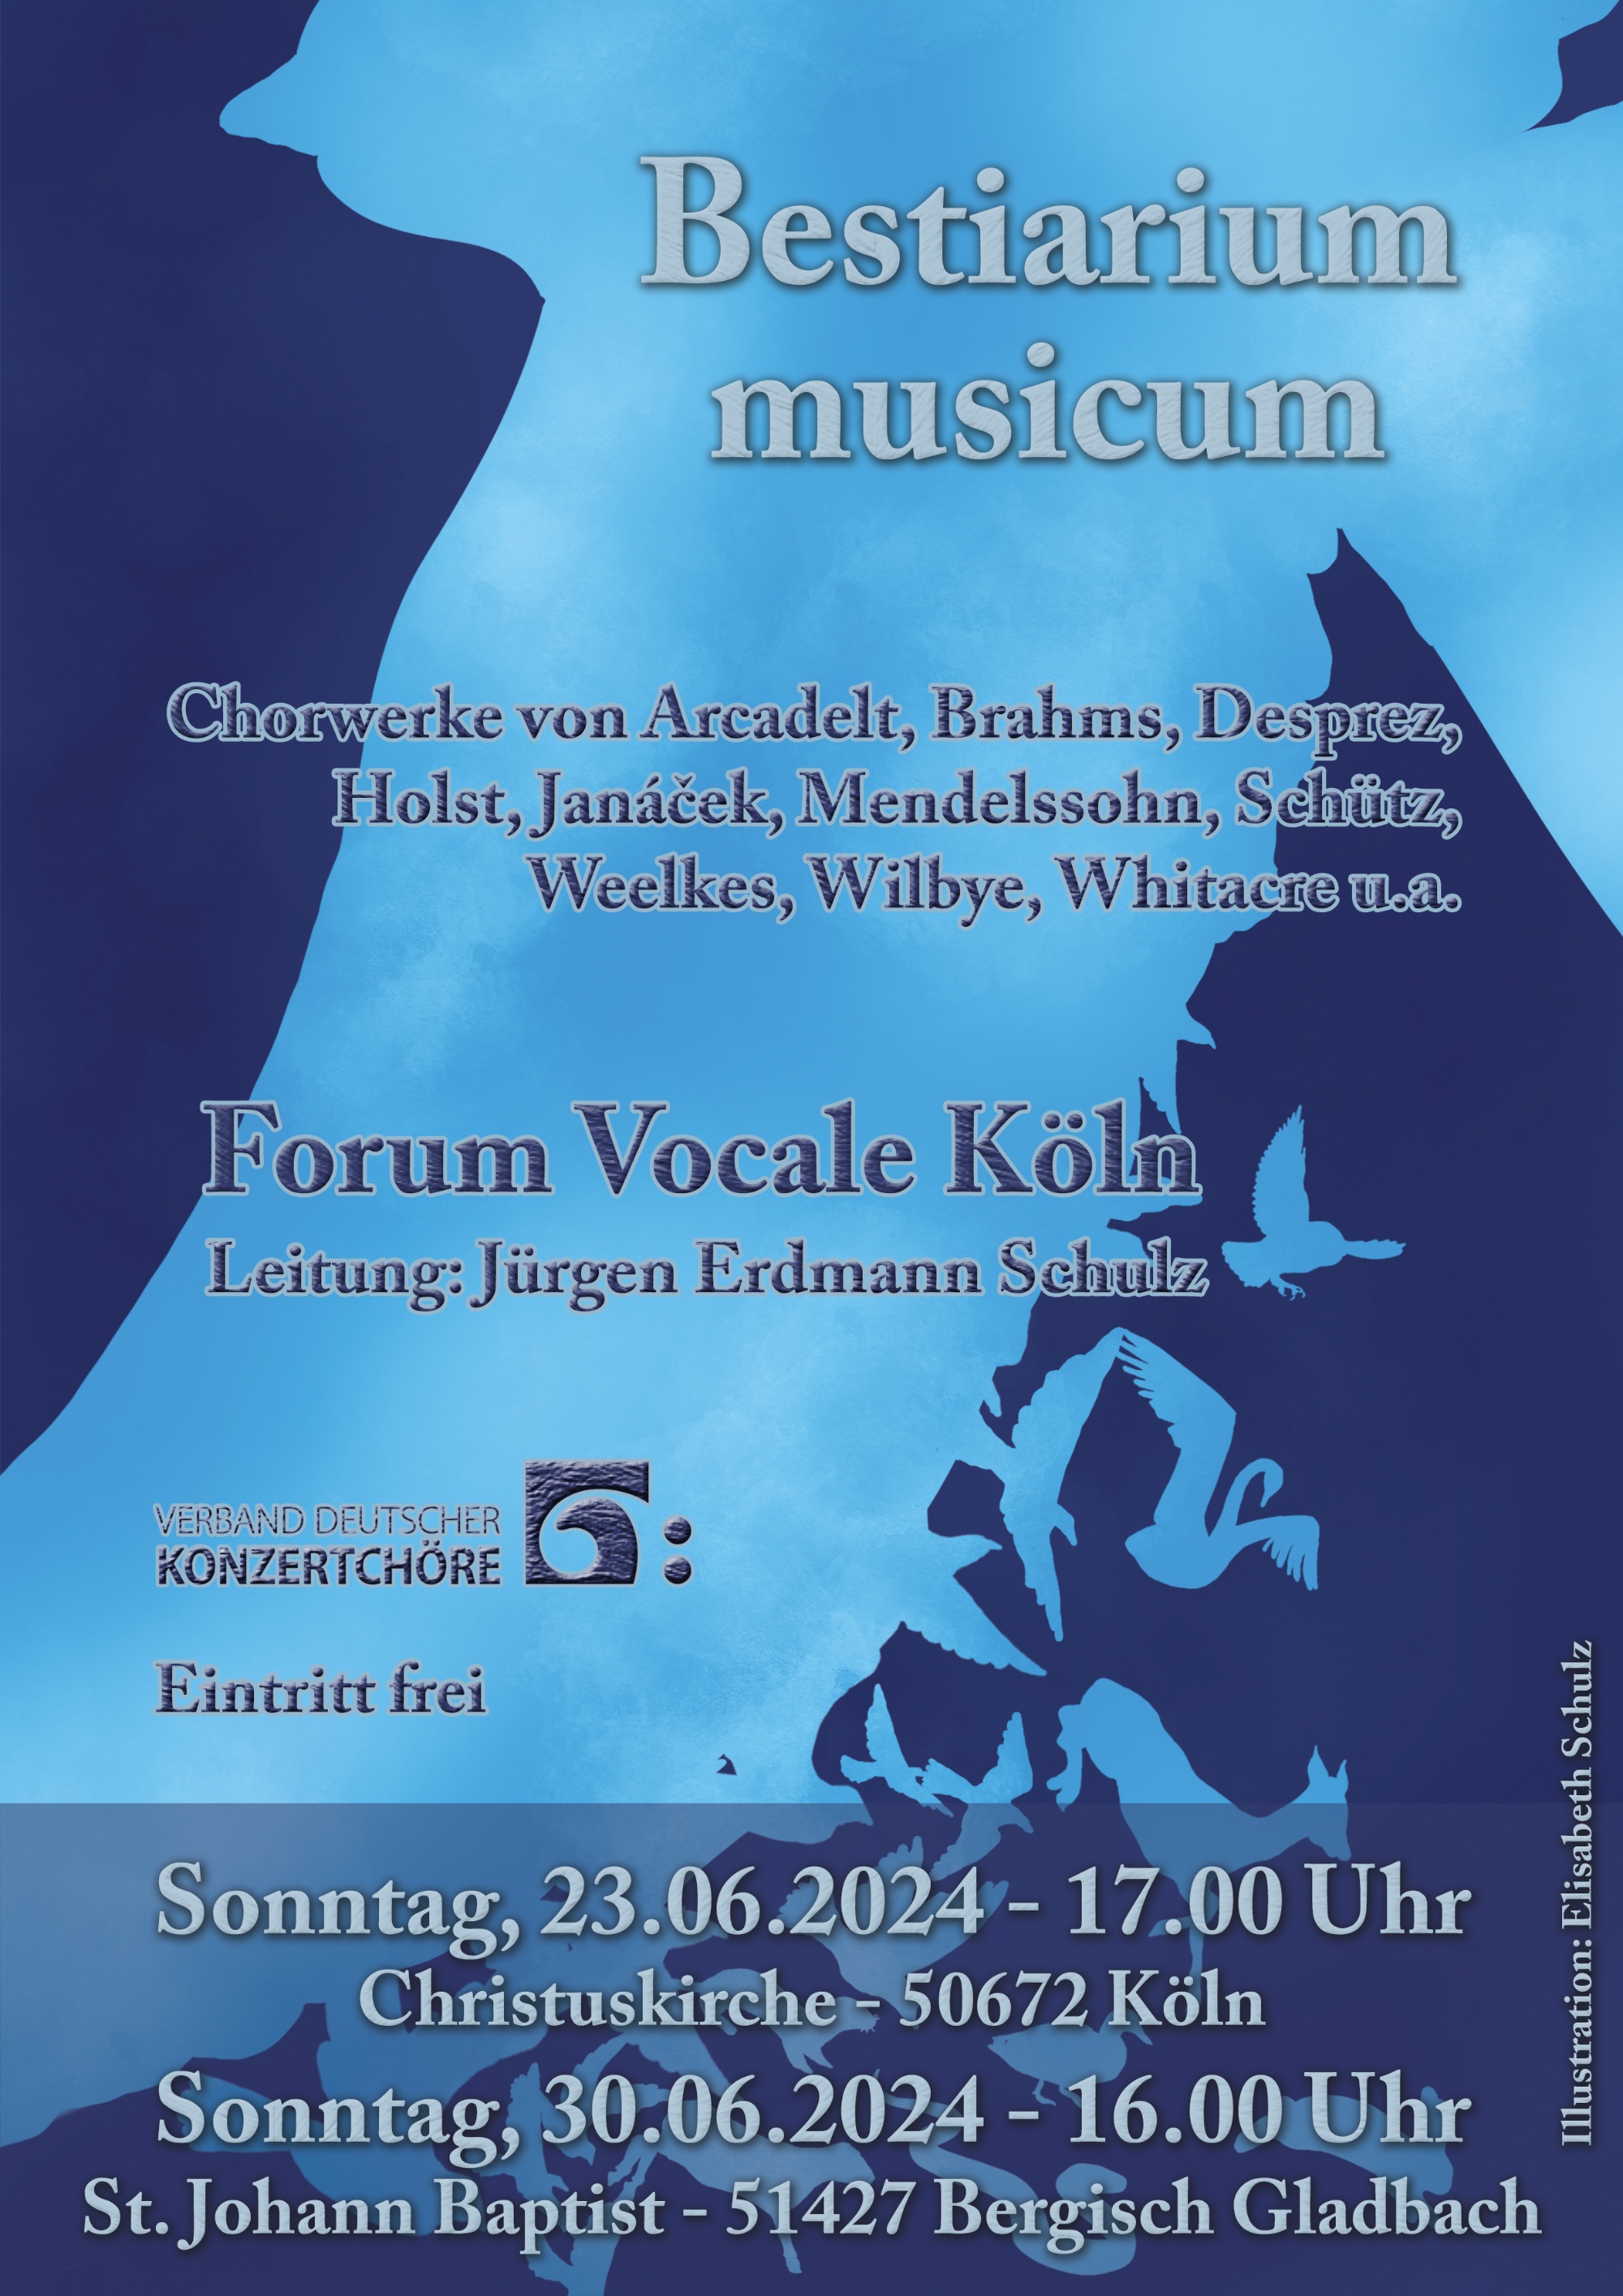 Forum Vocale Köln: Bestiarum musicum